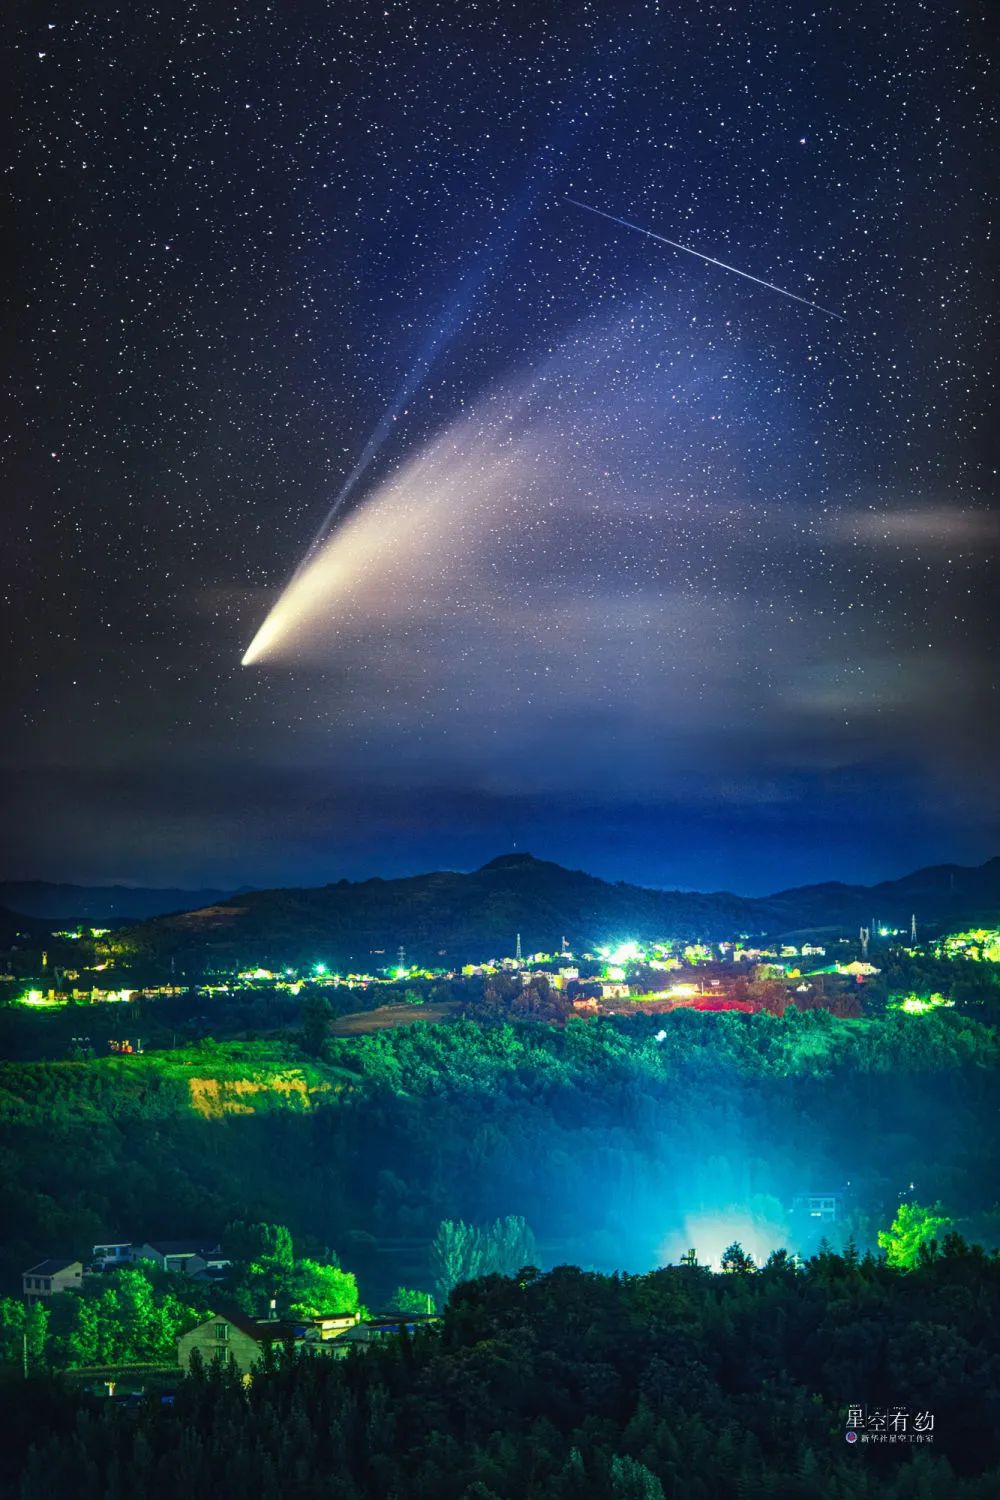 重庆市星空摄影爱好者戴建峰2020年7月19日在陕西安康拍摄的新智彗星。（本人供图）